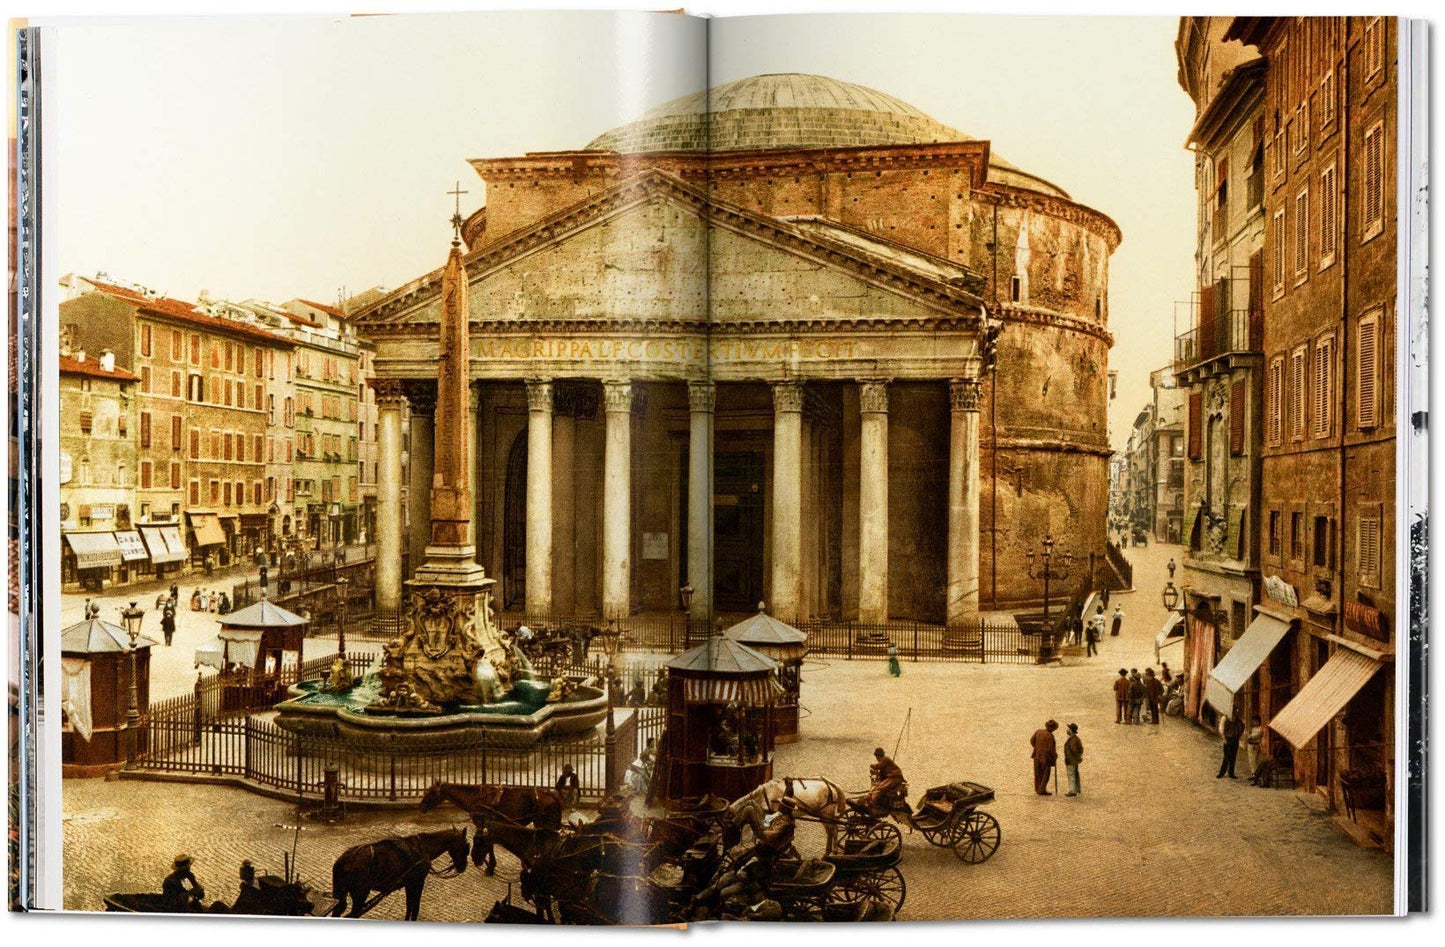 Rome: Portrait of a City